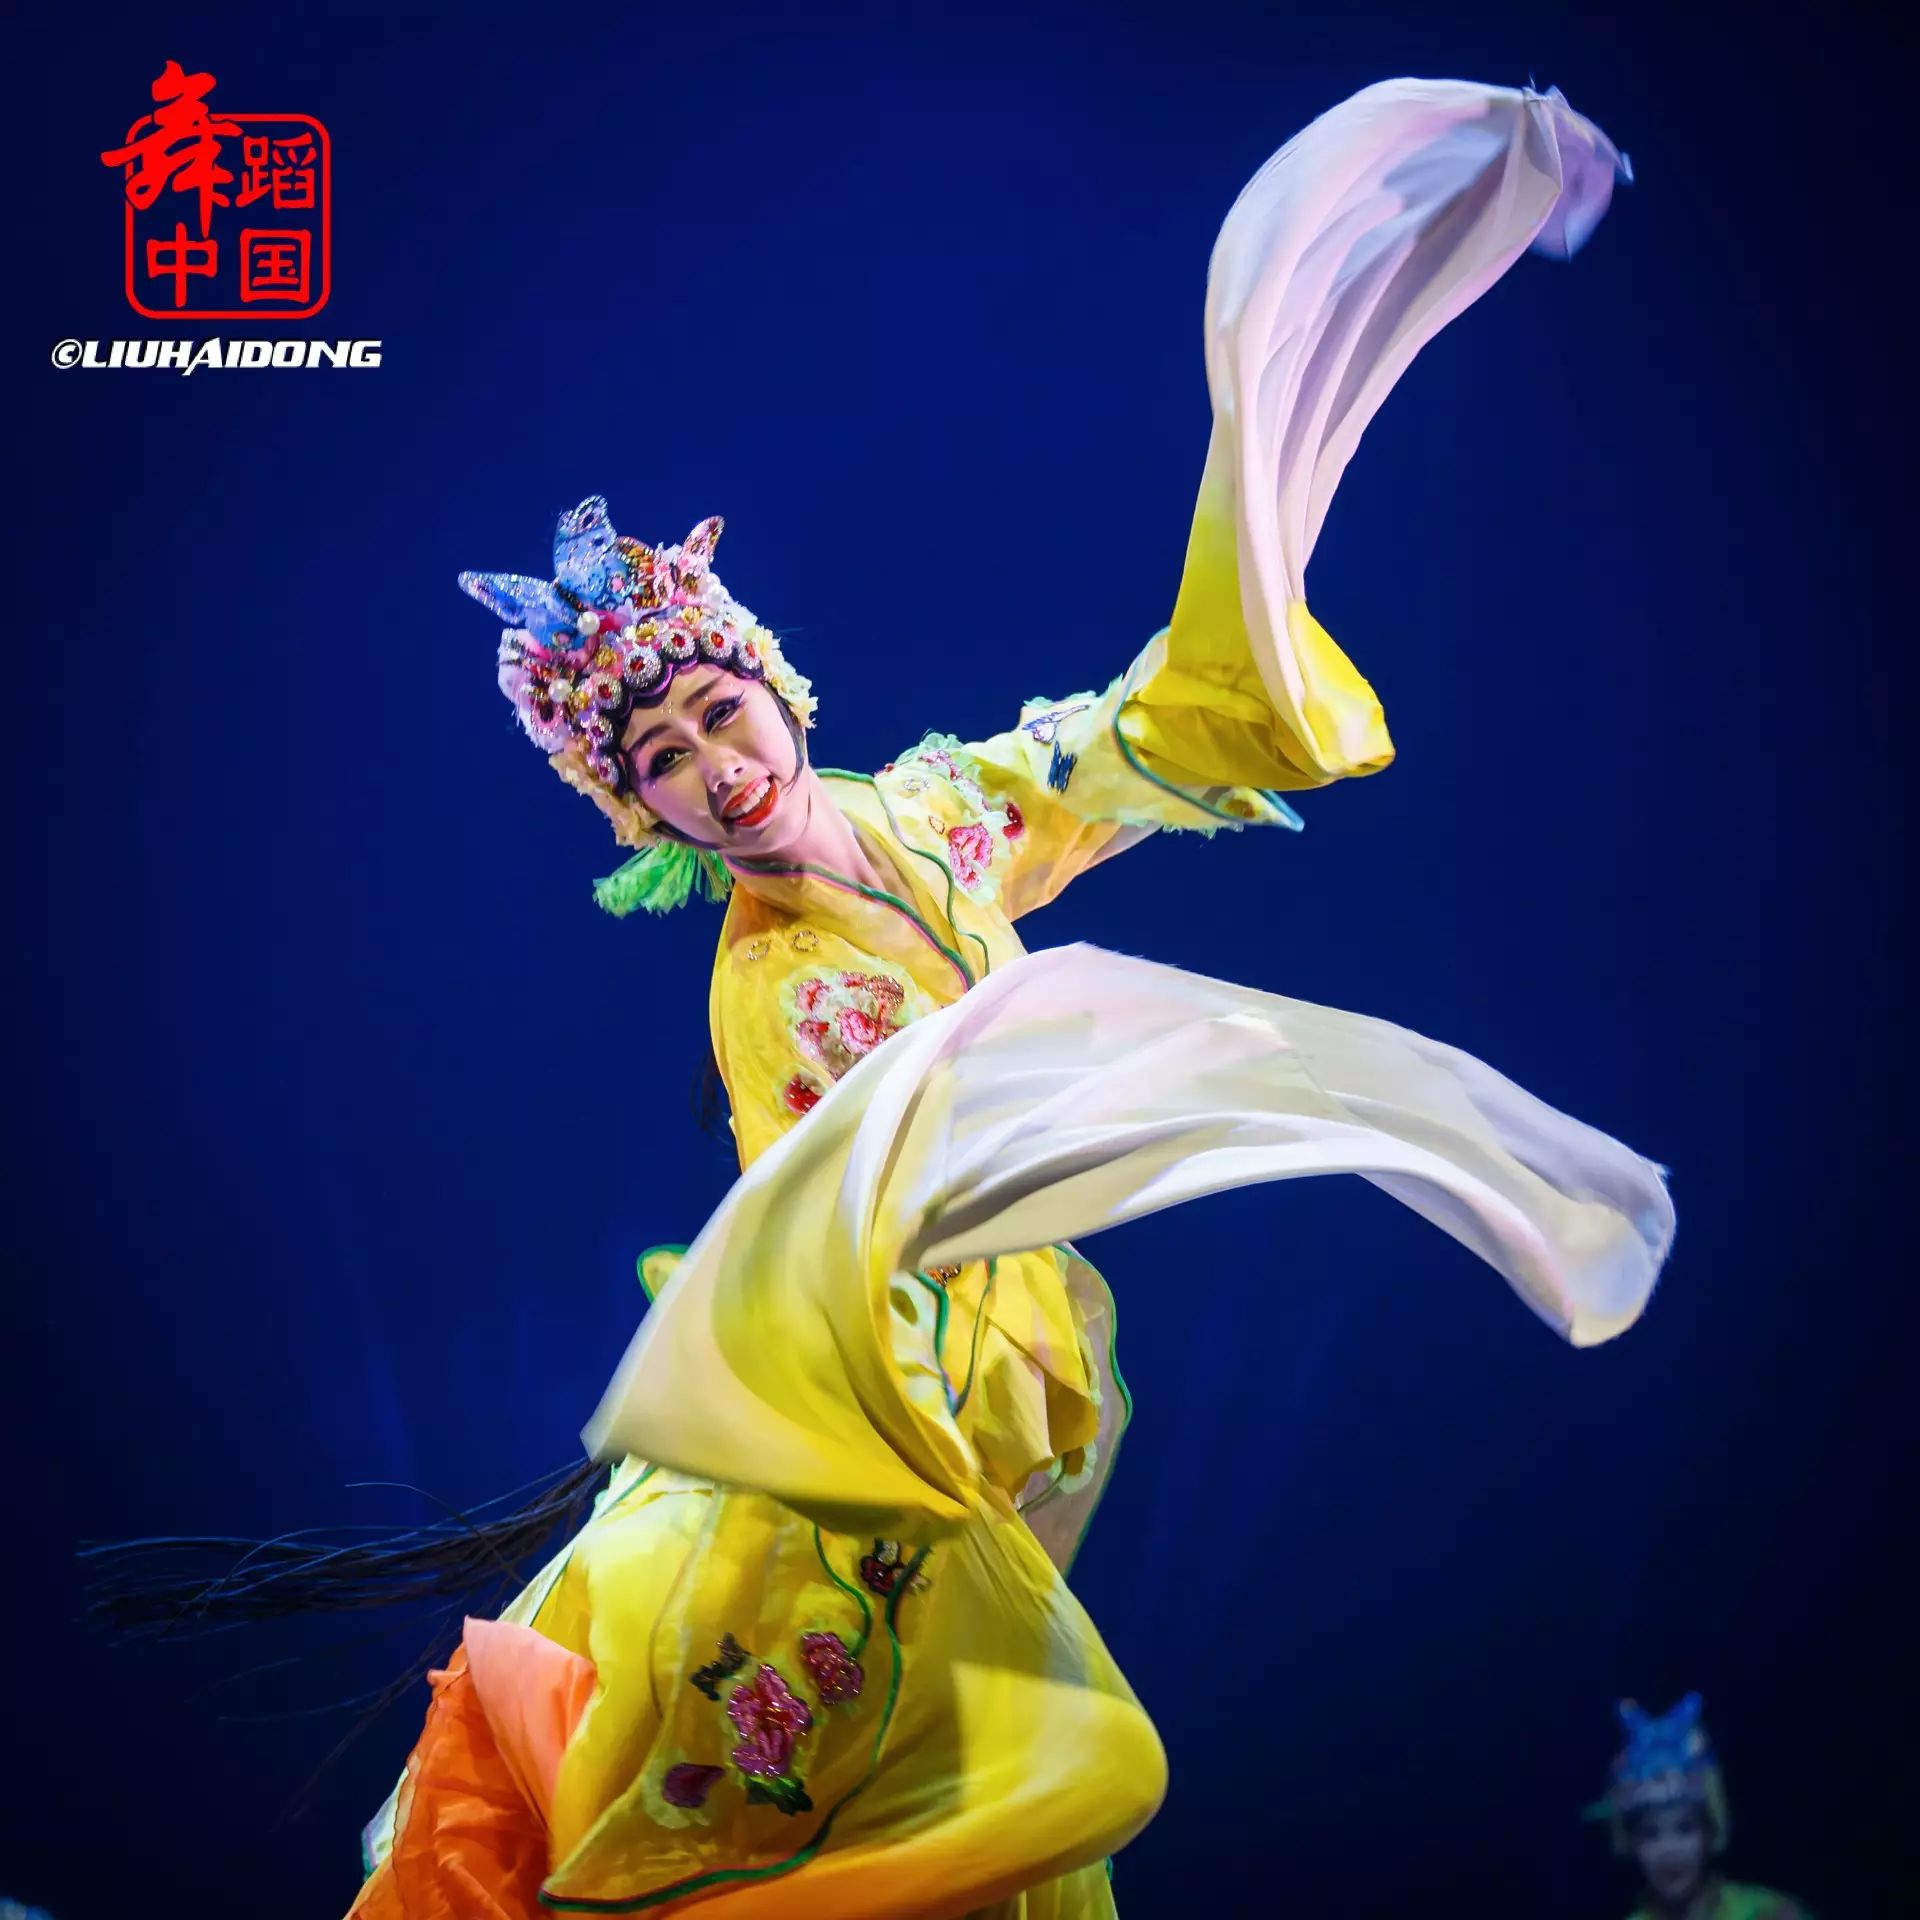 舞蹈编导:刘凌莉指导教师:张  蕊表演班级:舞蹈学院2014级中国古典舞